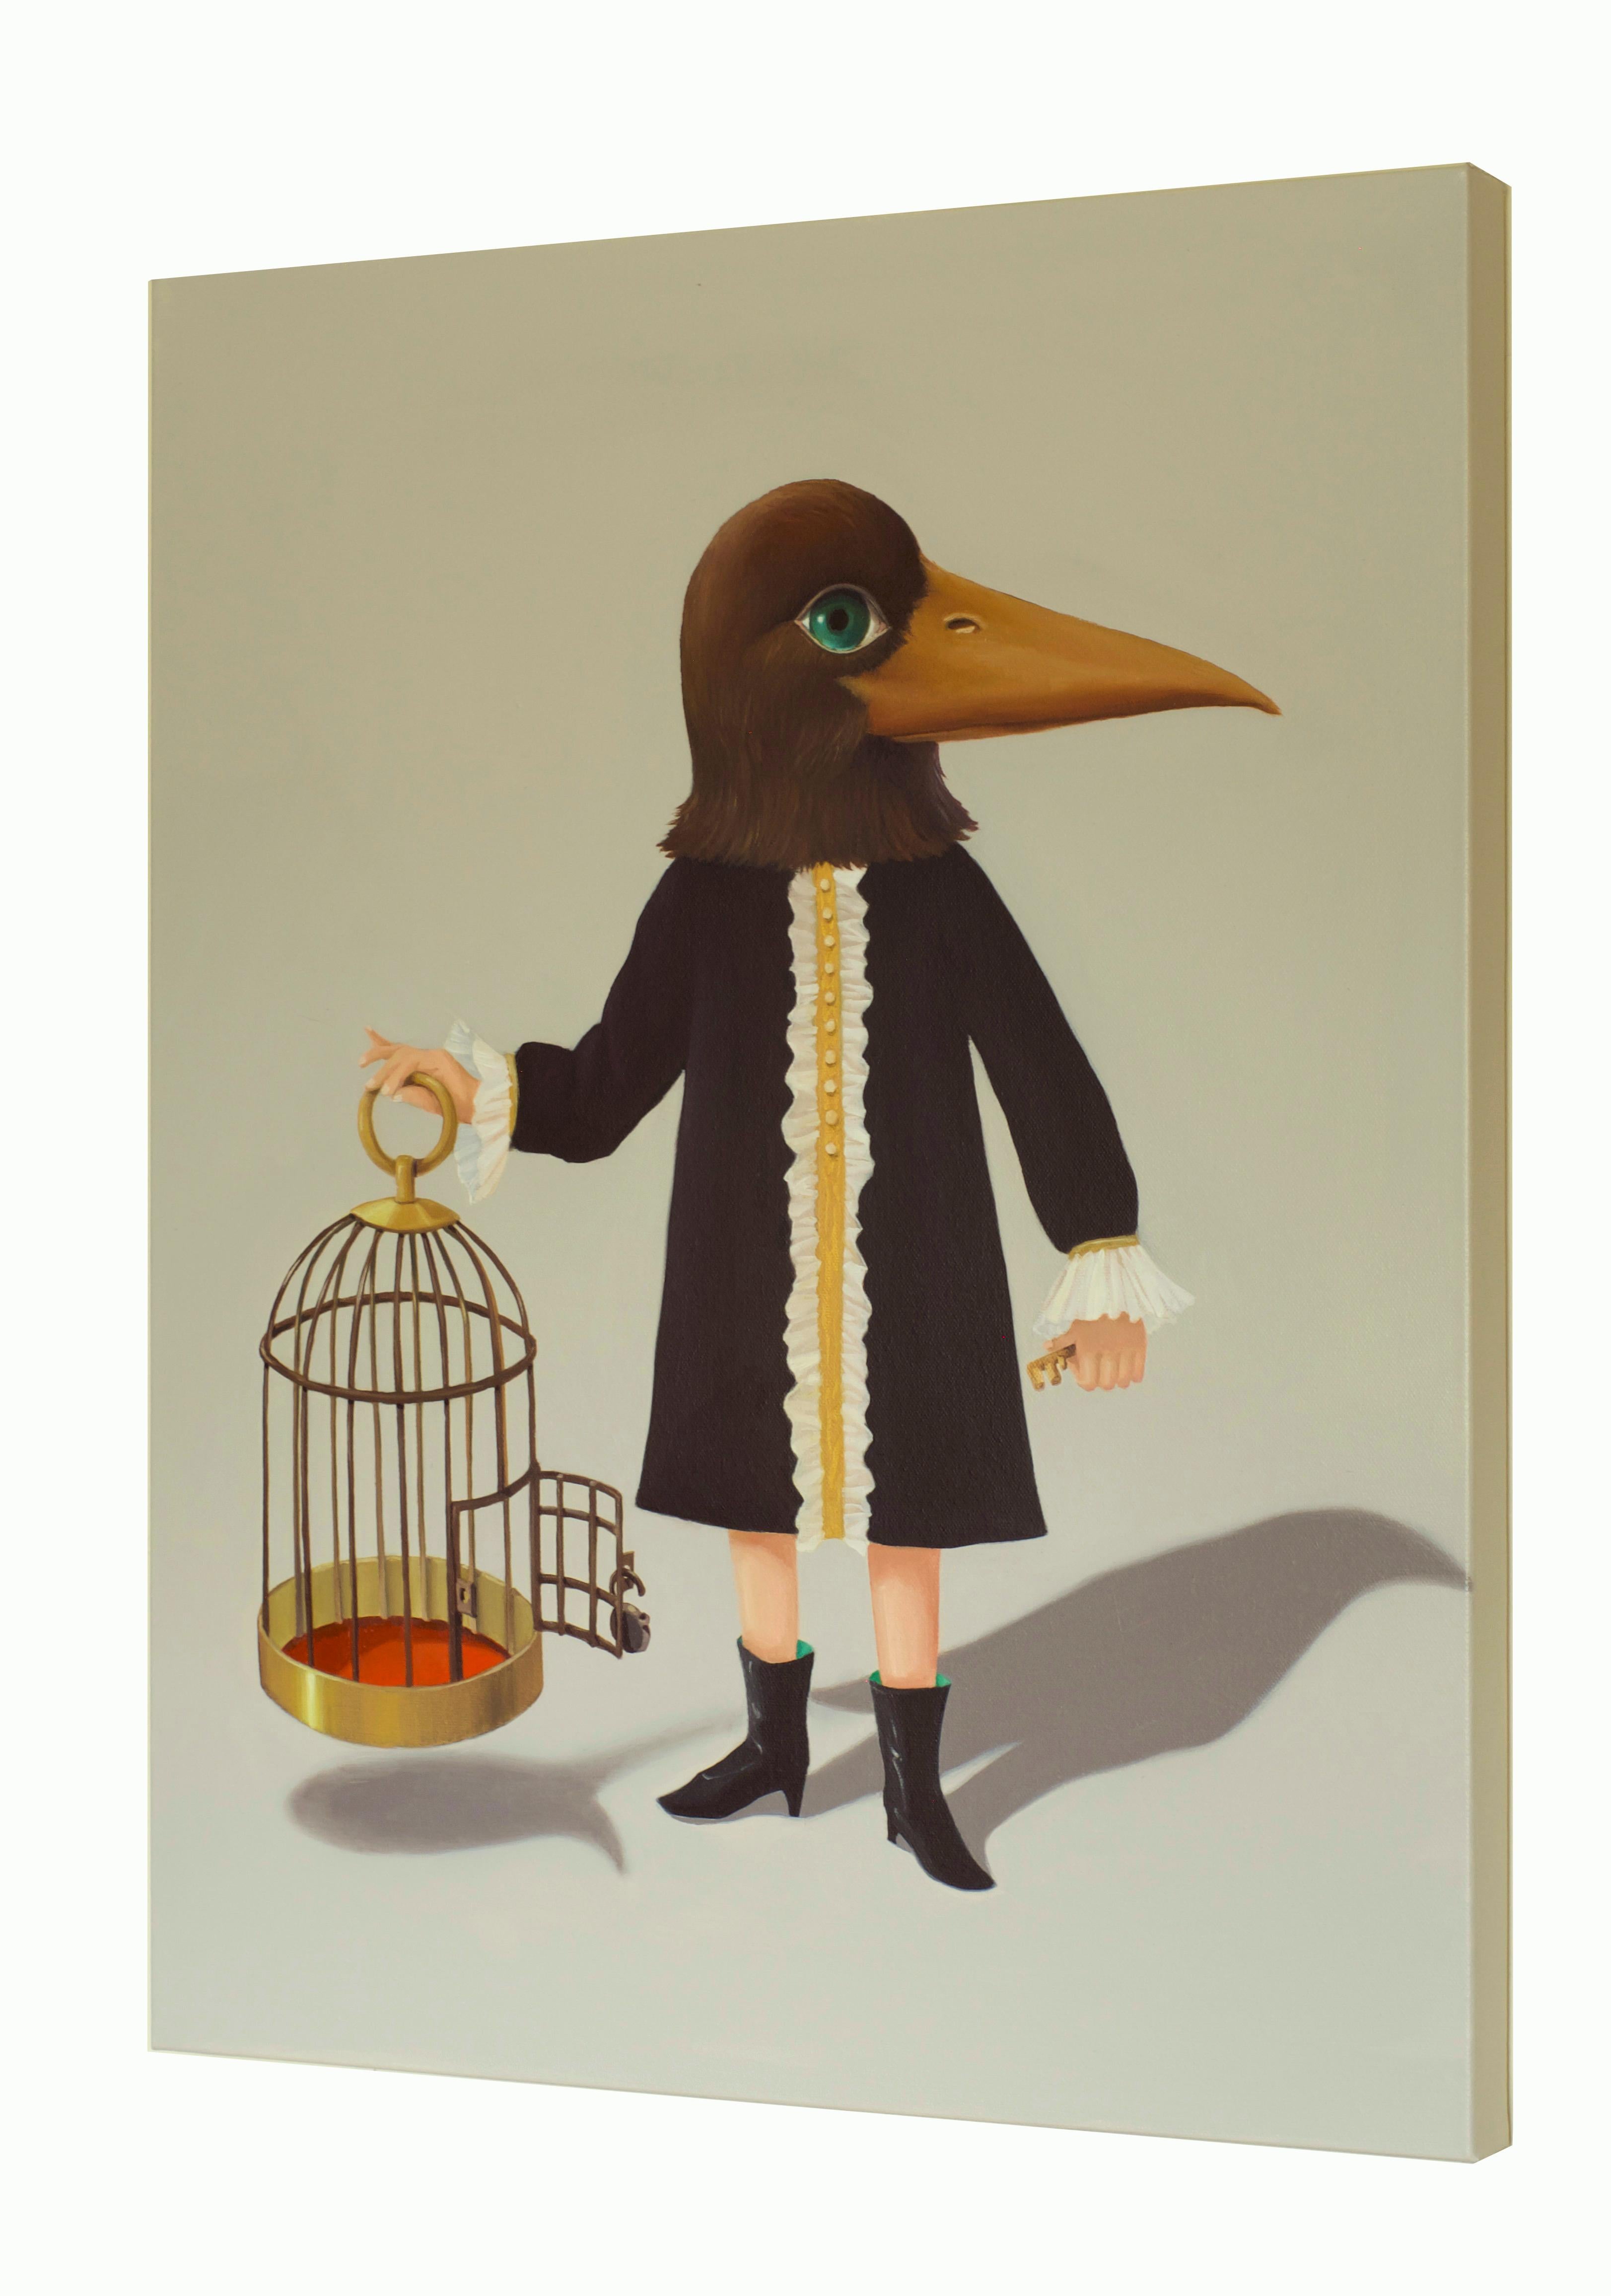 L'oiseau, la cage et la clé - Painting de Soyoung S. Park 박소영